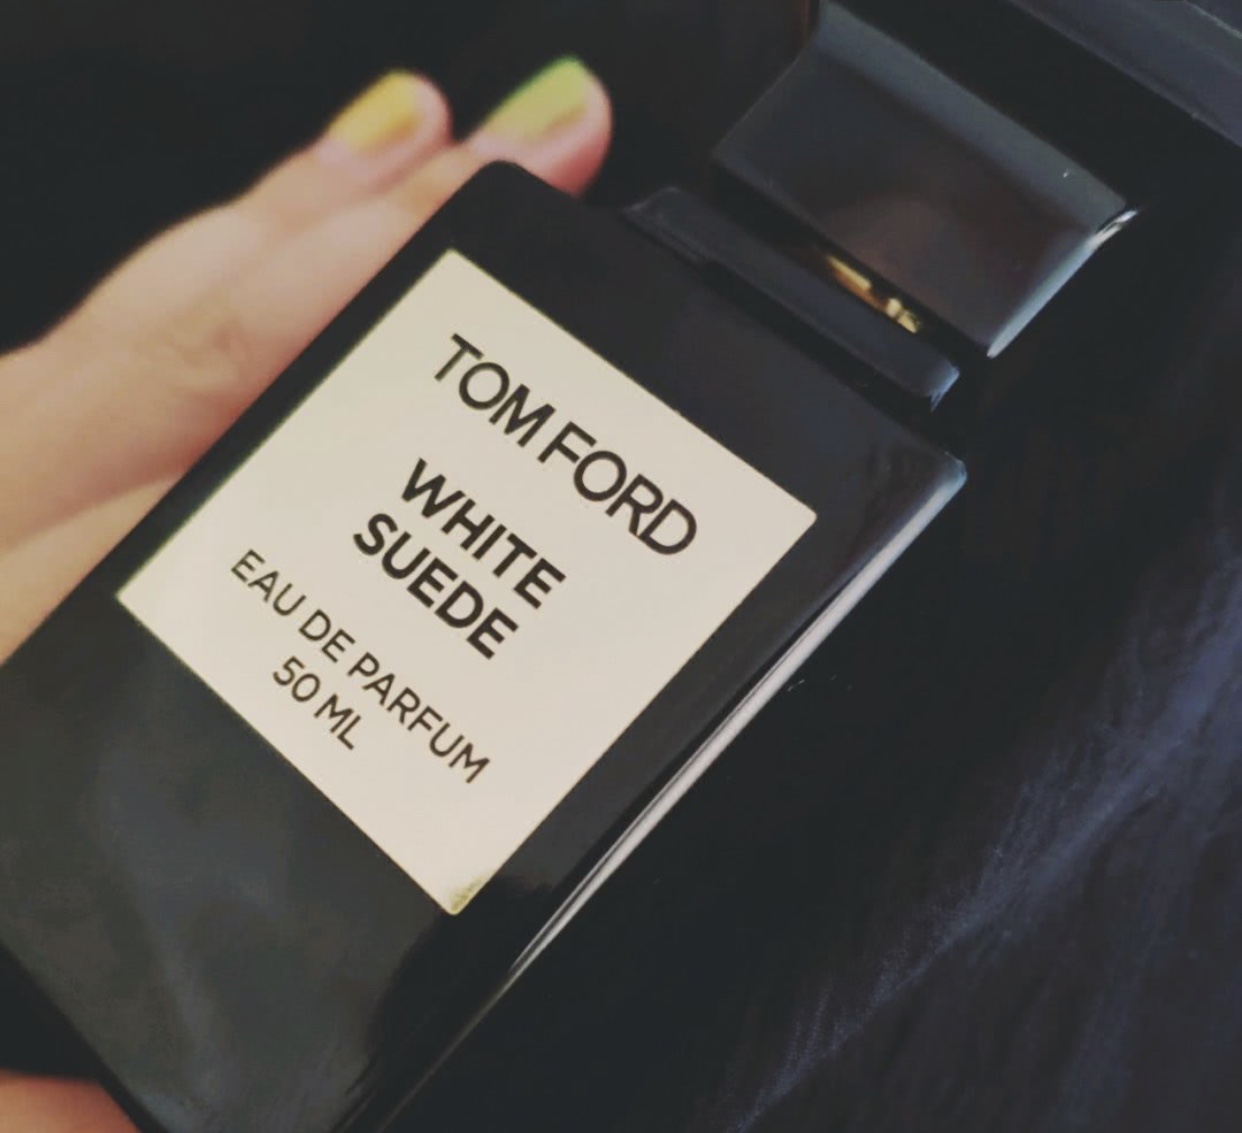 <𝗡𝗲𝘄> Tom Ford white suede nước hoa da lộn trắng EDP Tester 5/10ml 𝗔𝘂𝗿𝗼𝗿𝗮'𝘀 𝗣𝗲𝗿𝗳𝘂𝗺𝗲 𝗦𝘁𝗼𝗿𝗲 ®️